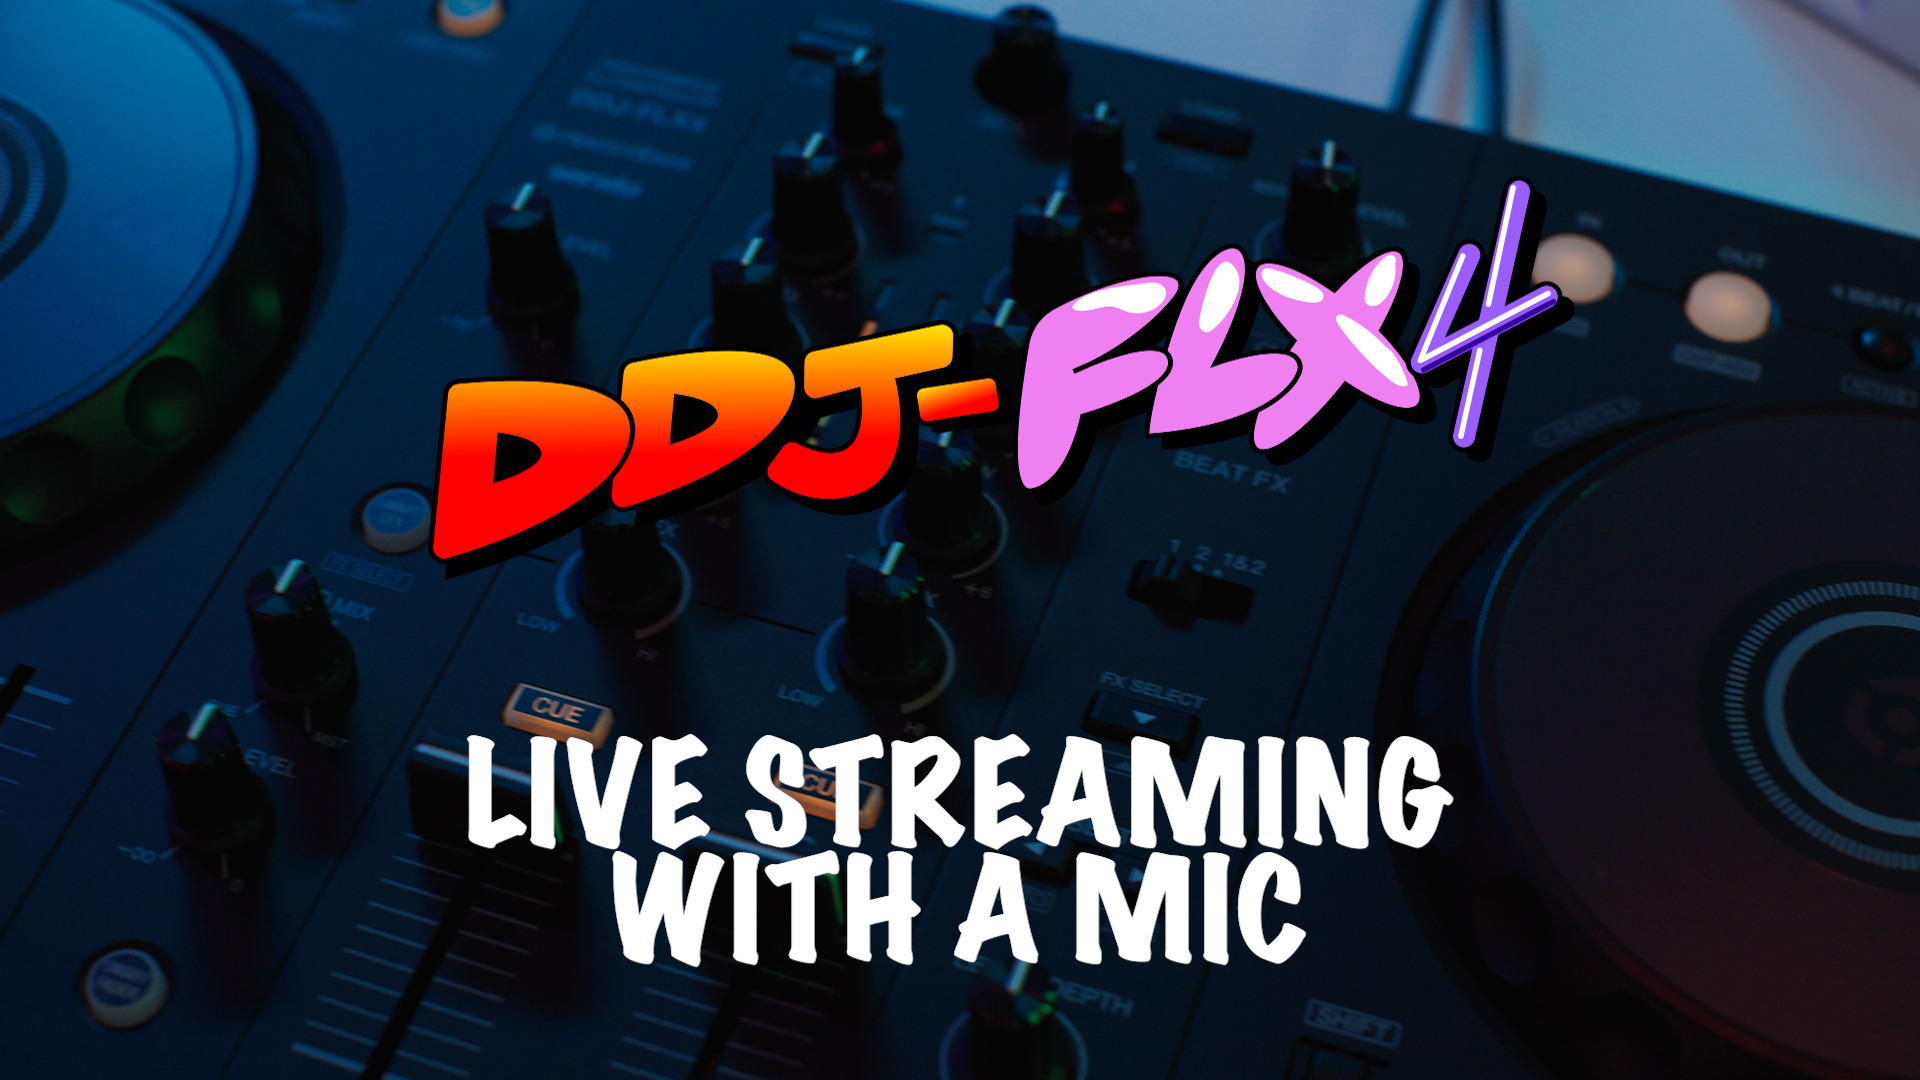 DDJ-FLX4 - 兼容多种应用程序的2ch DJ控制器(Black)